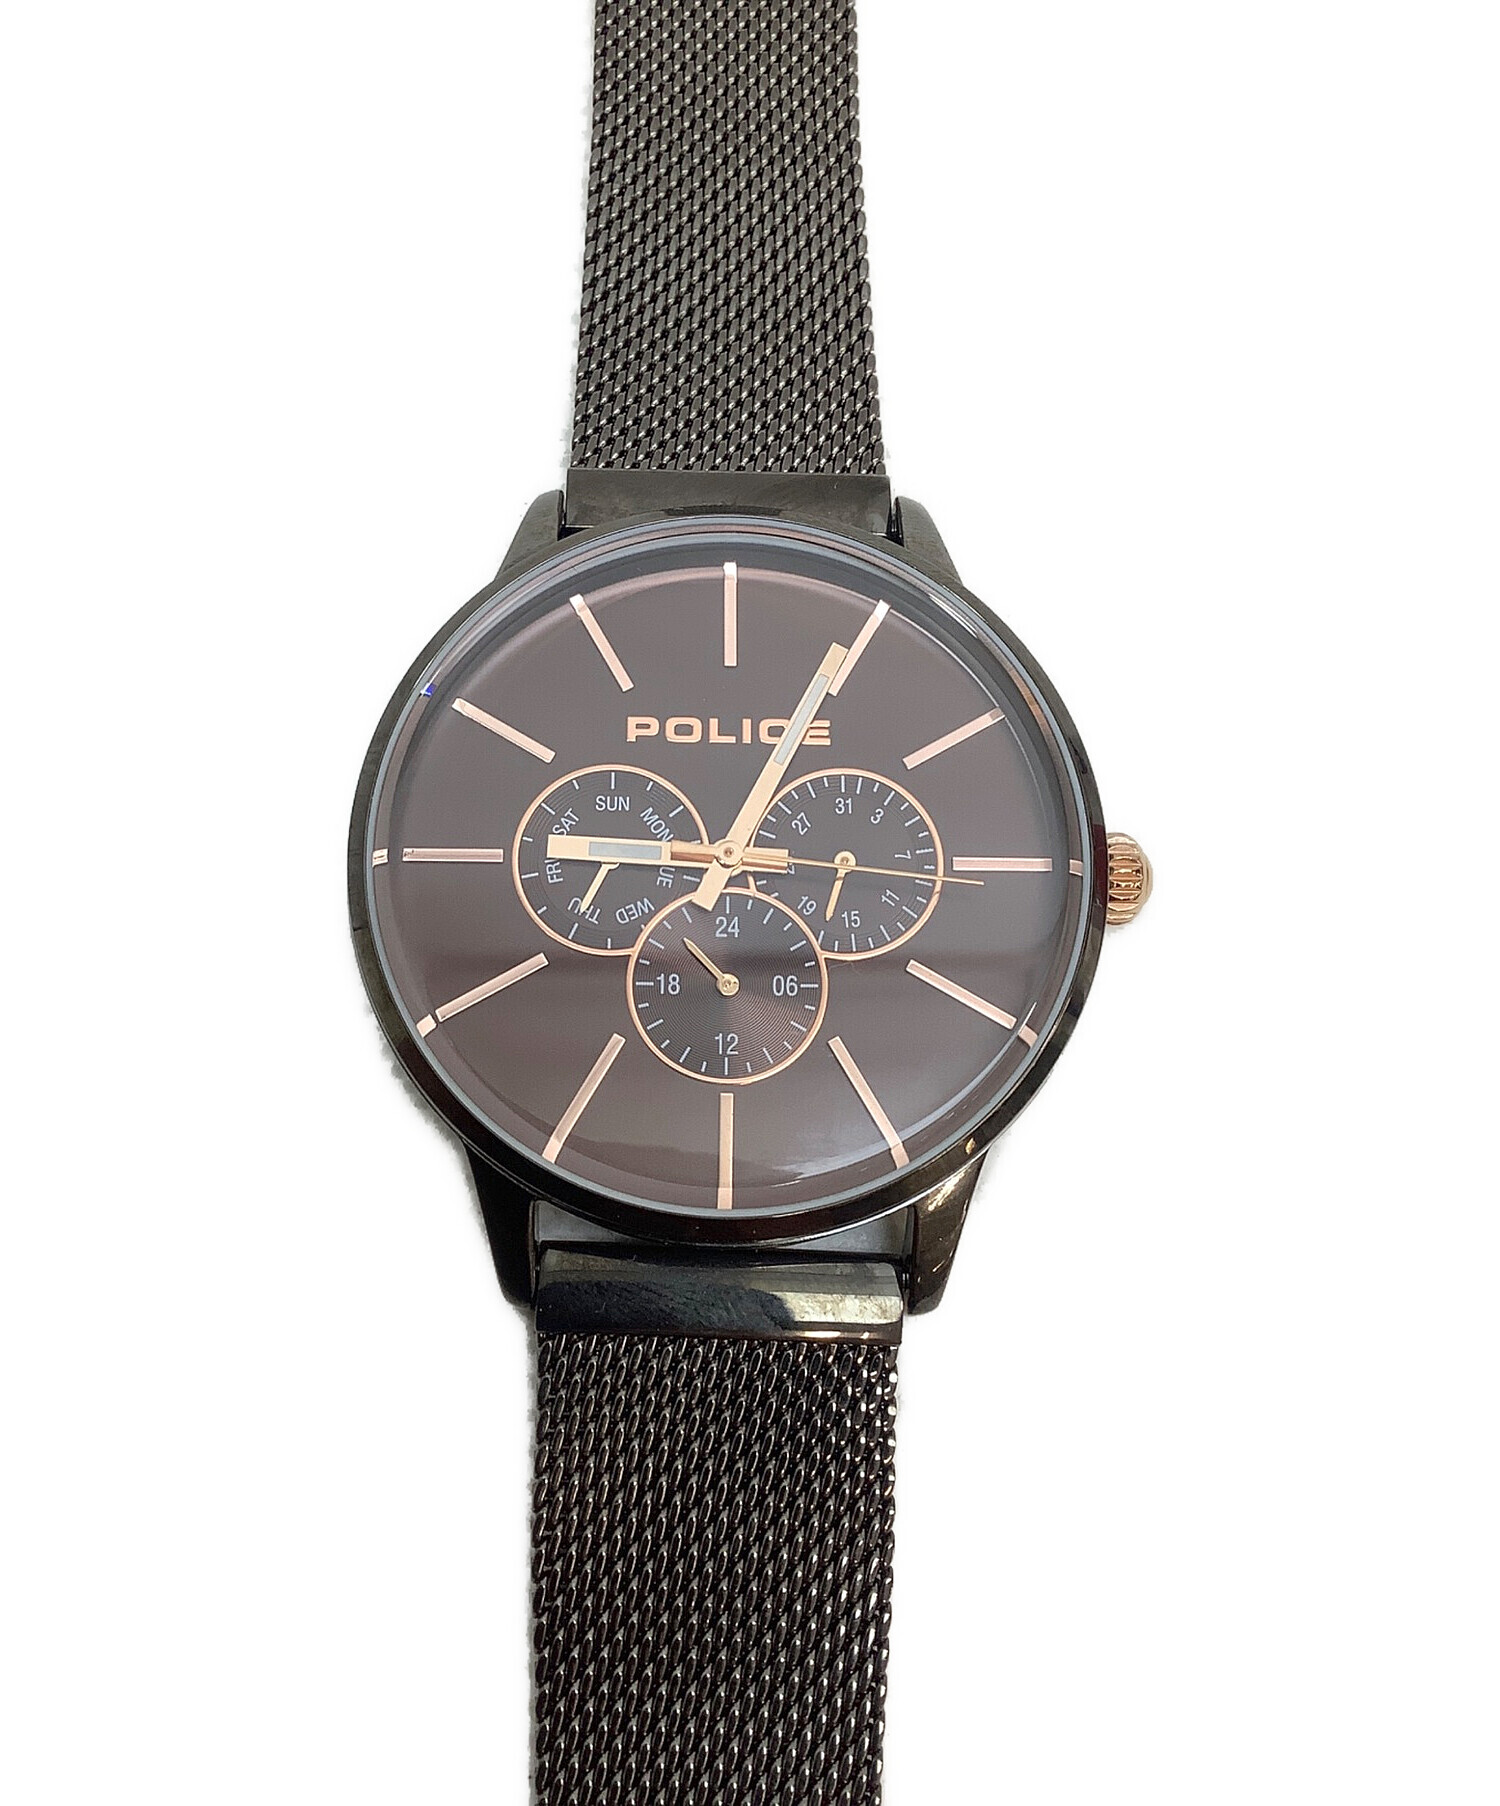 POLICE 腕時計 GRAMERCY 14964J ブラック - 腕時計(アナログ)